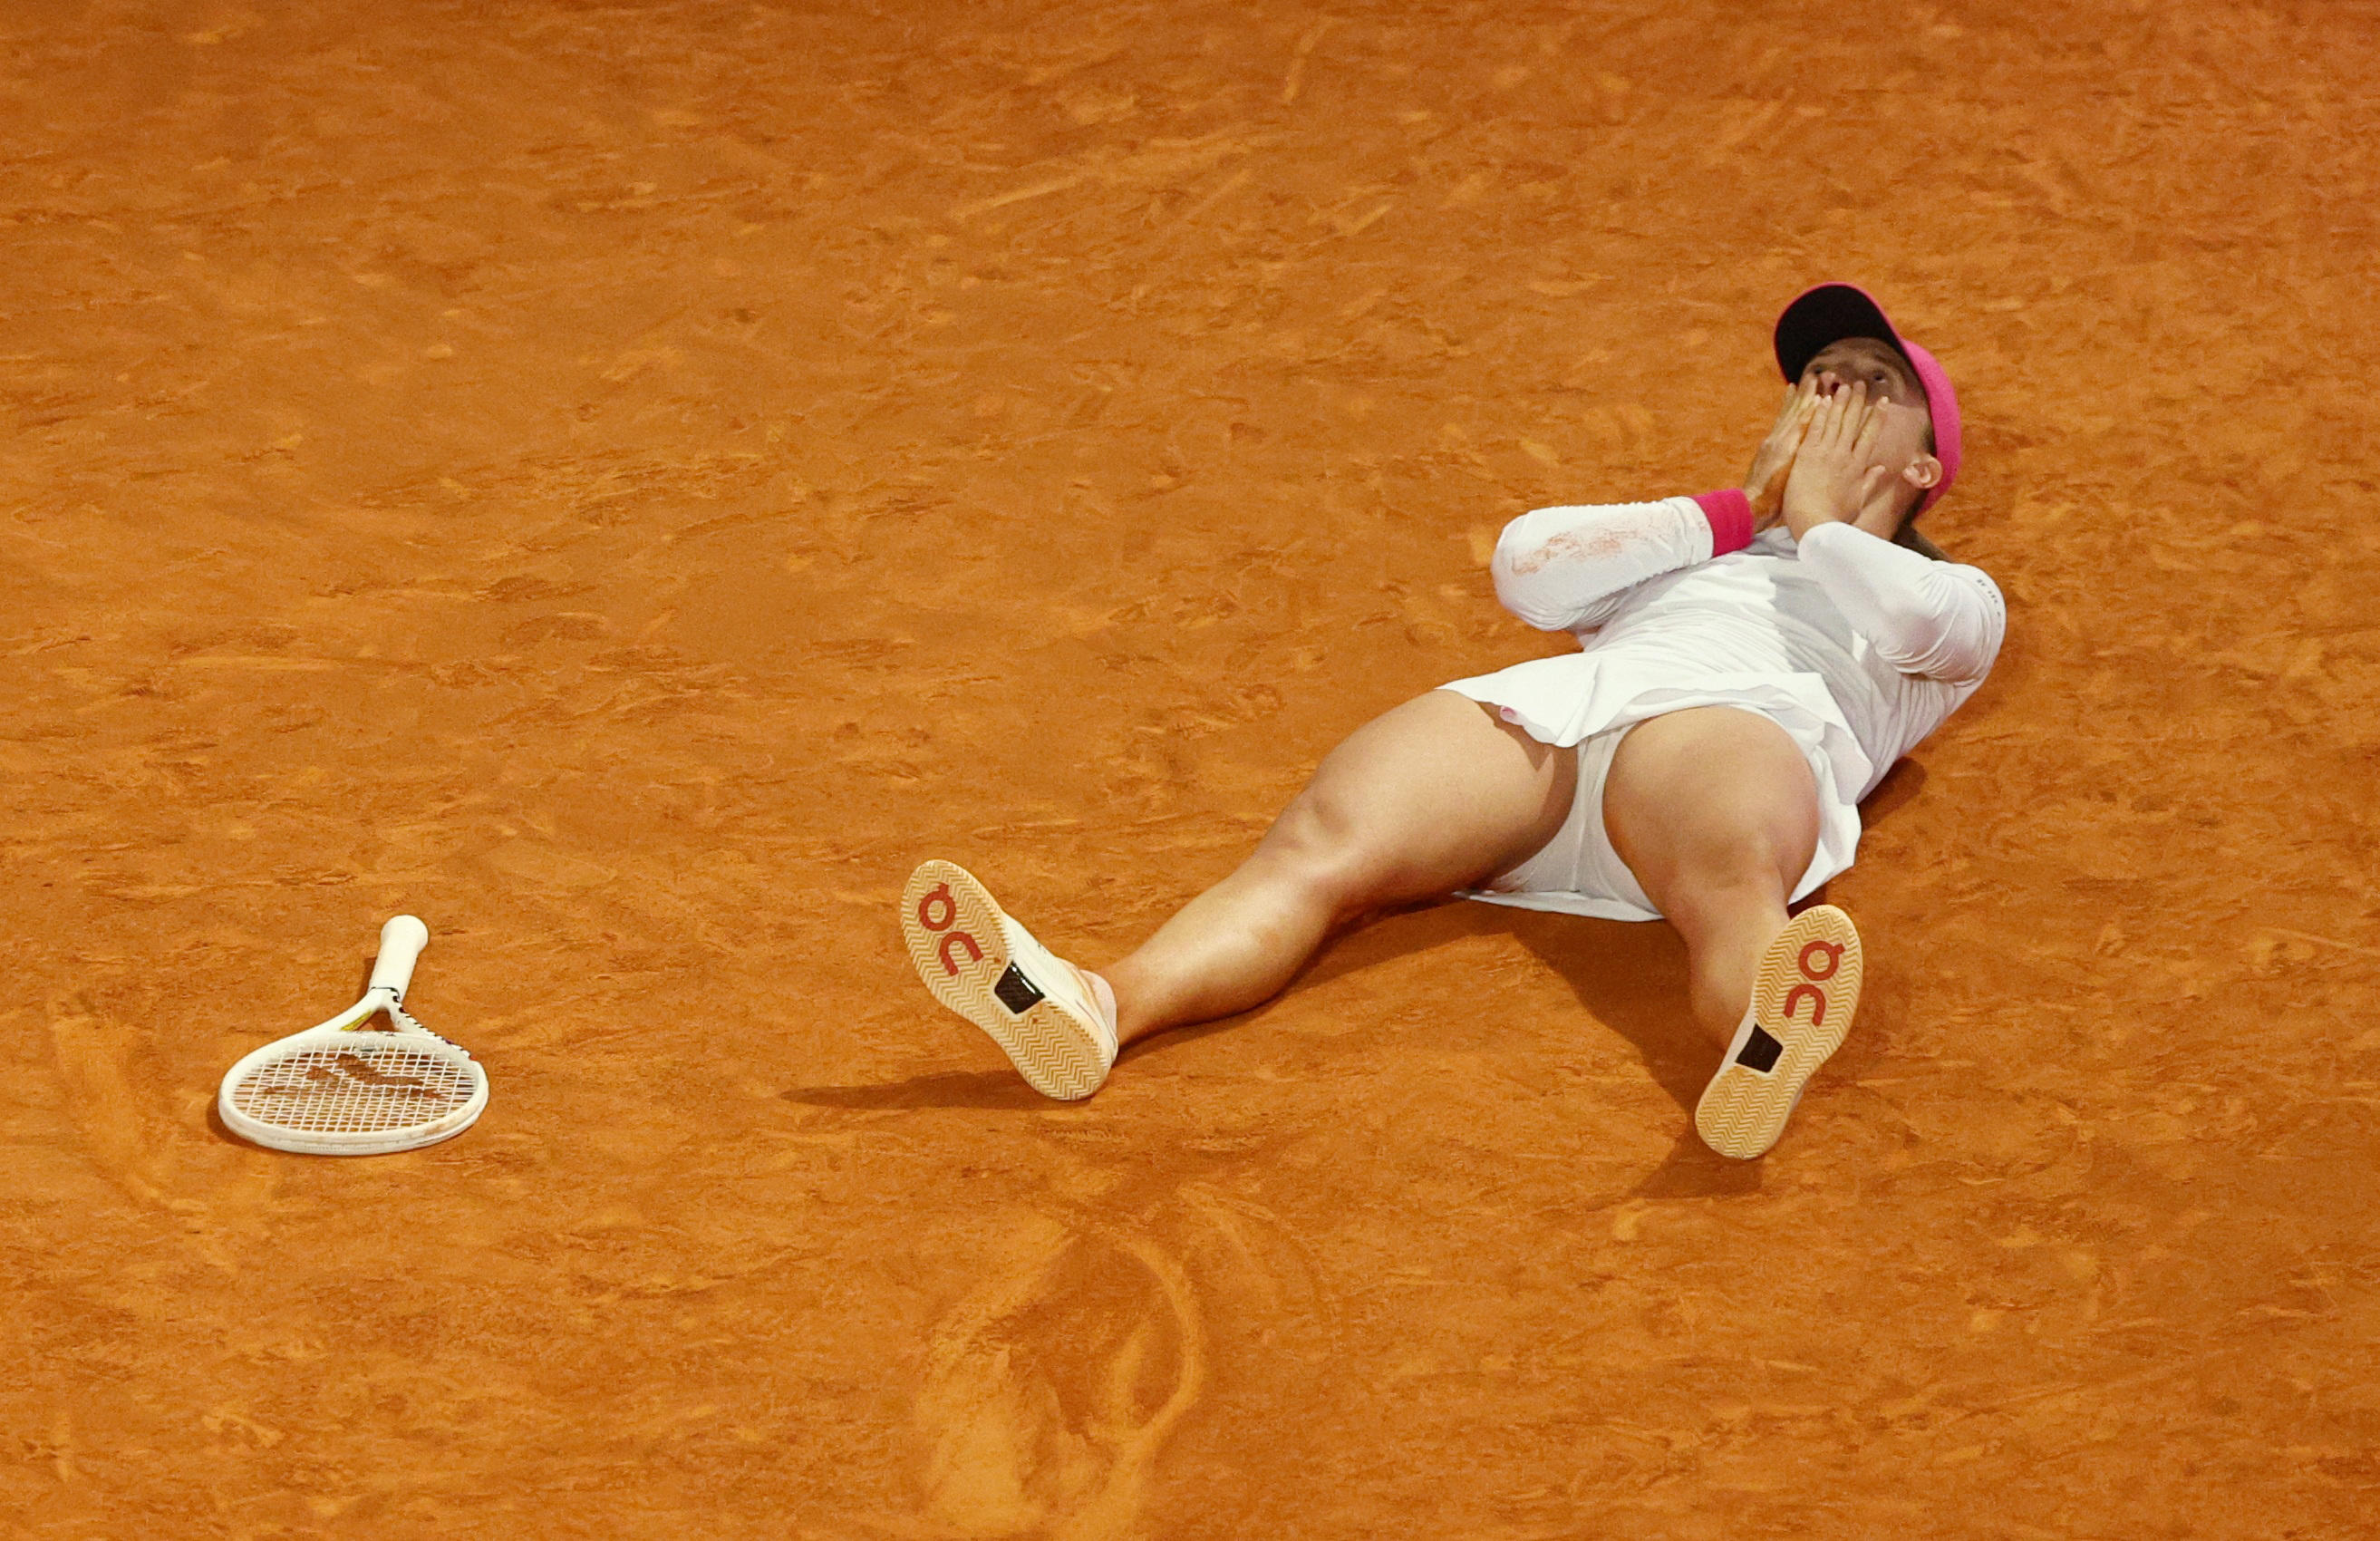 Iga Swiatek a remporté son 20e titre en carrière, ce samedi, contre Aryna Sabalenka (V. Santos Moura / Reuters).